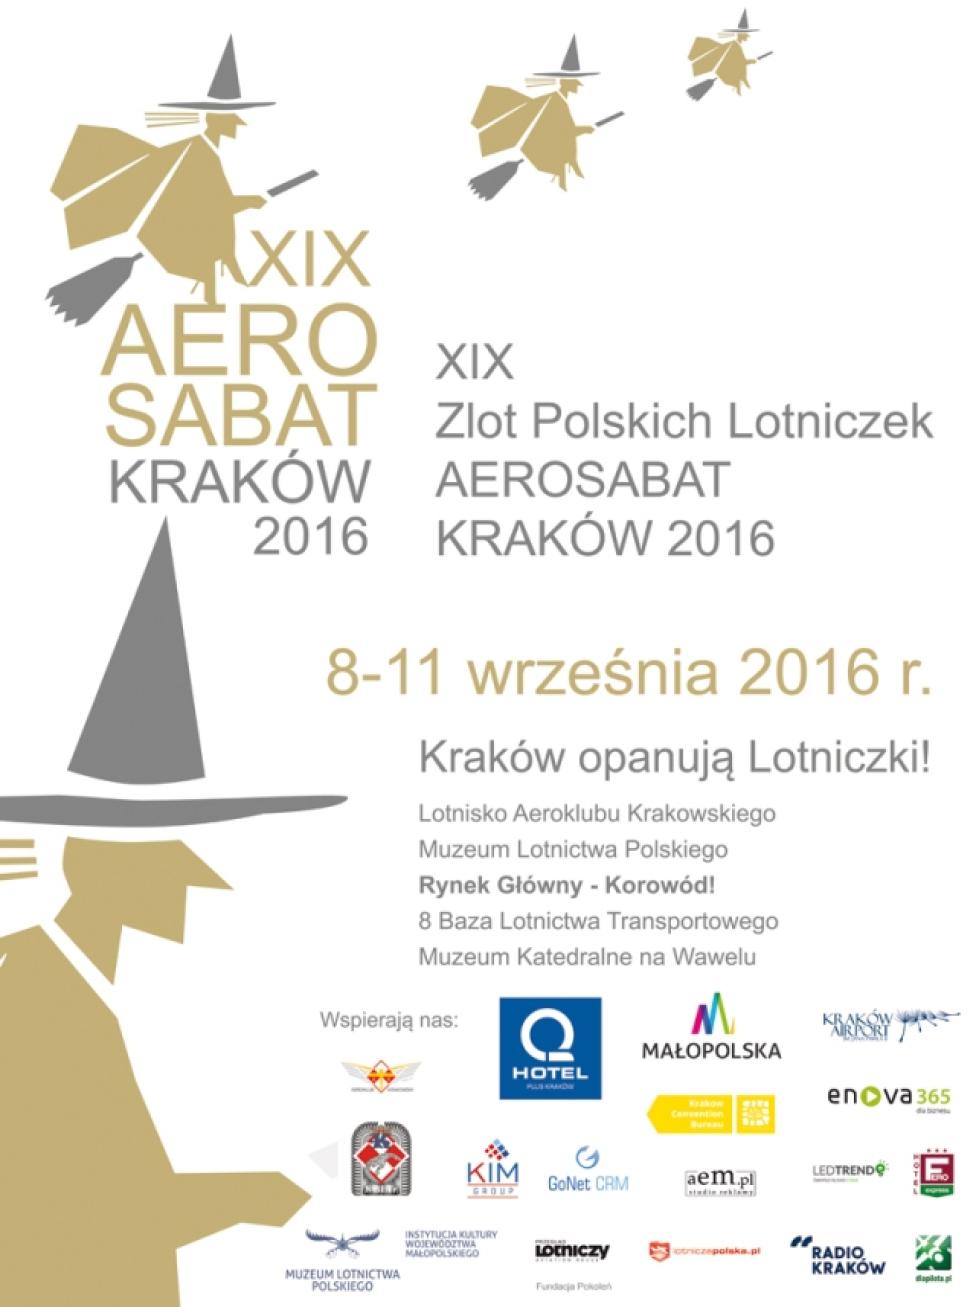 XIX Zlot Polskich Lotniczek – "AEROSABAT 2016" w Krakowie (fot. muzeumlotnictwa.pl)